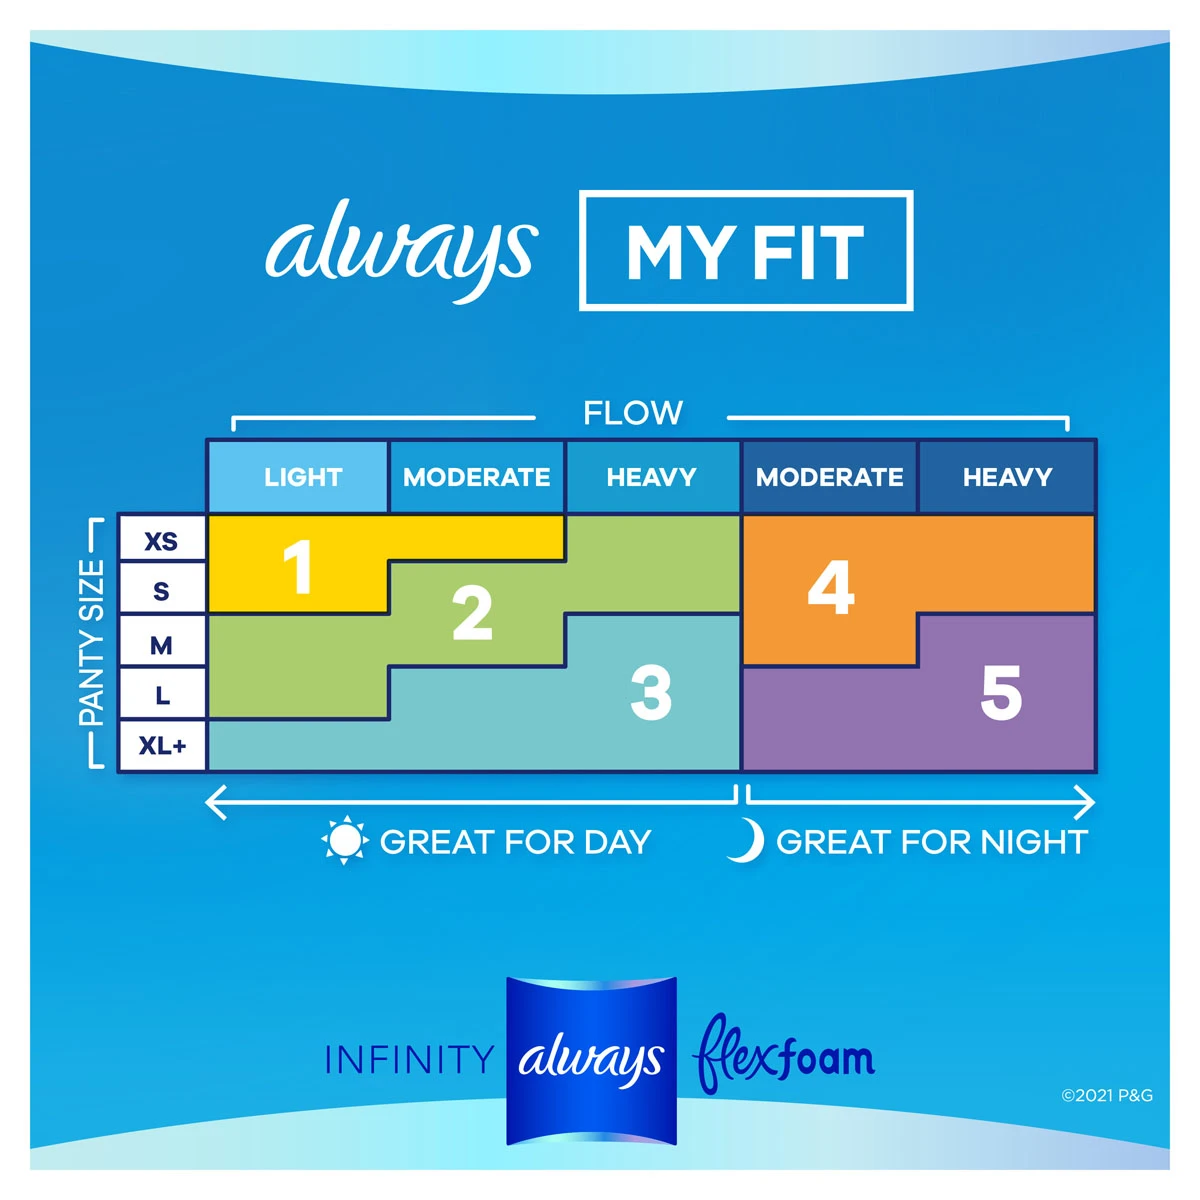 Always-Infinity-FlexFoam-Day-My-Fit